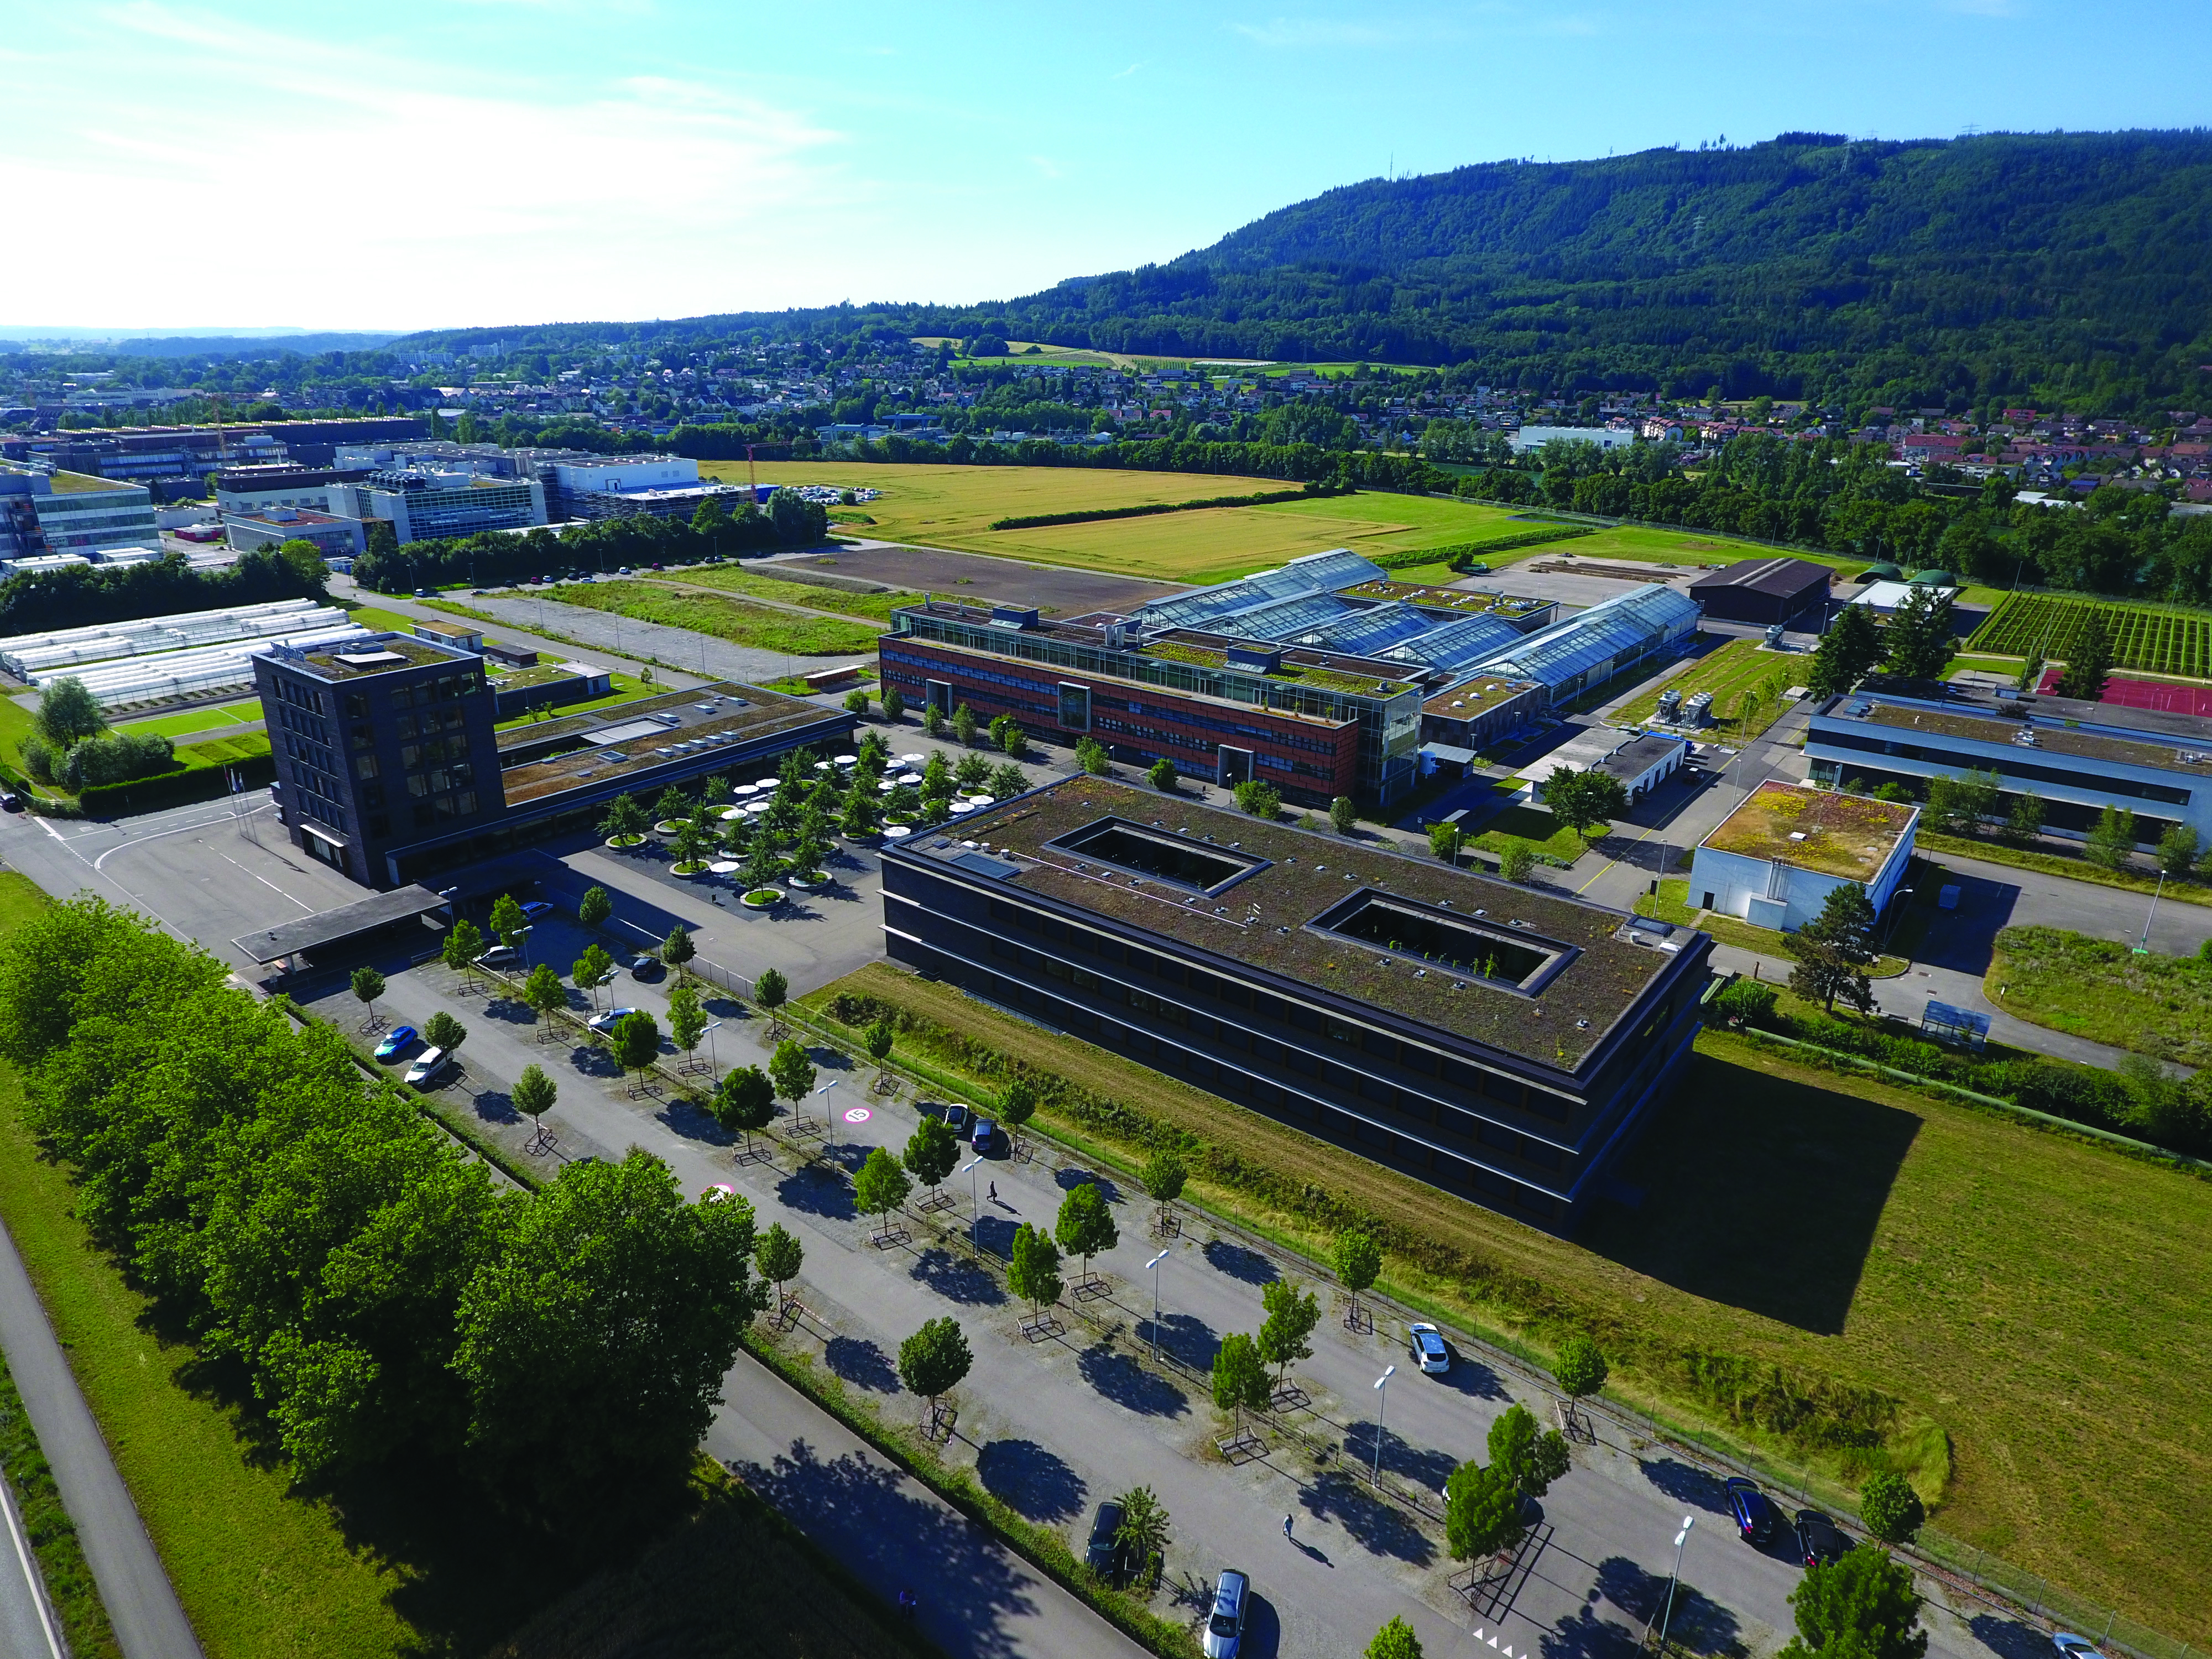 Hауково- дослідний центр компанії Syngenta, що розташований у місті Штайн (Швейцарія)